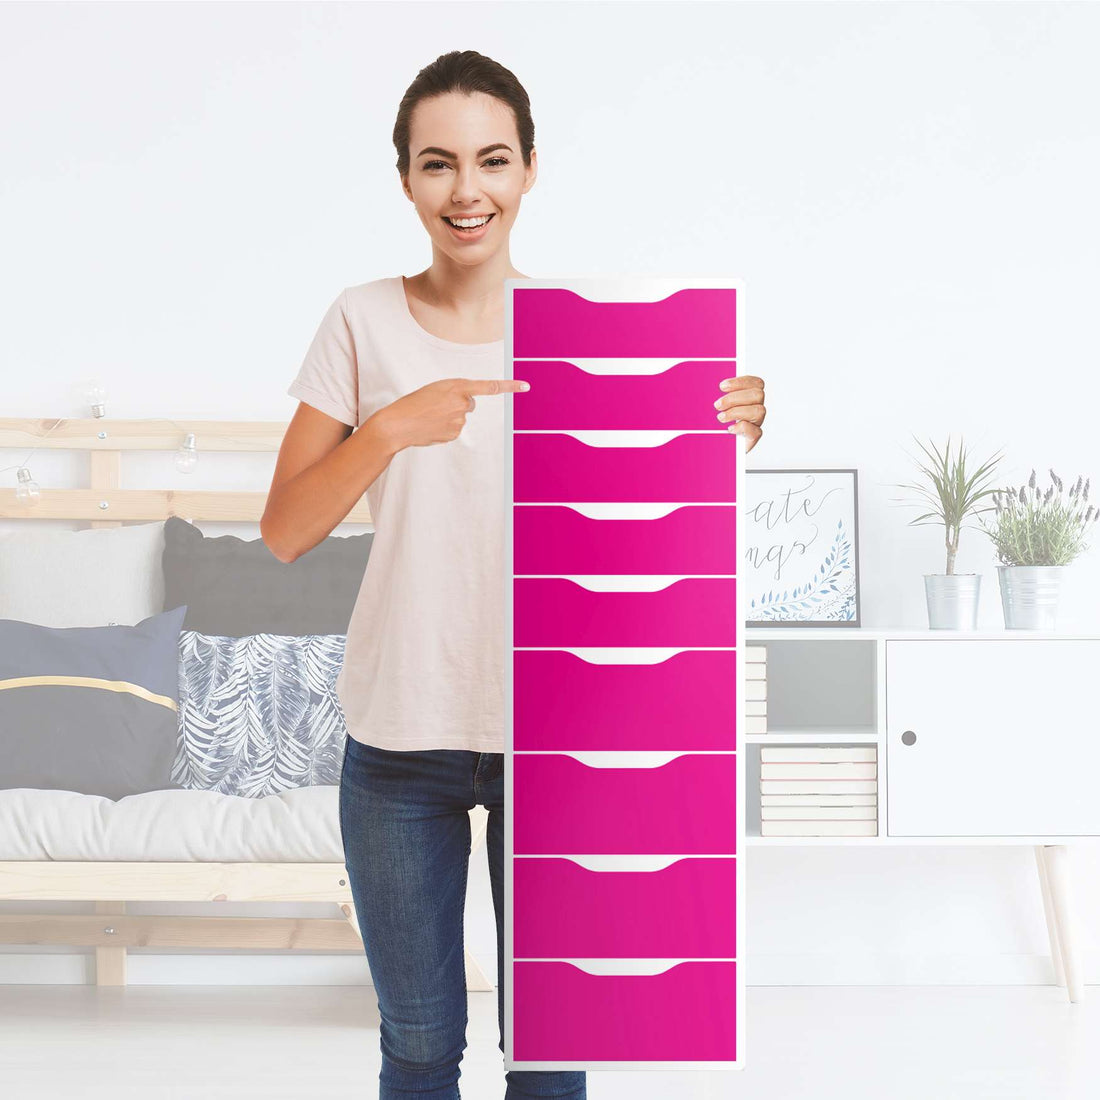 Folie für Möbel Pink Dark - IKEA Alex 9 Schubladen - Folie